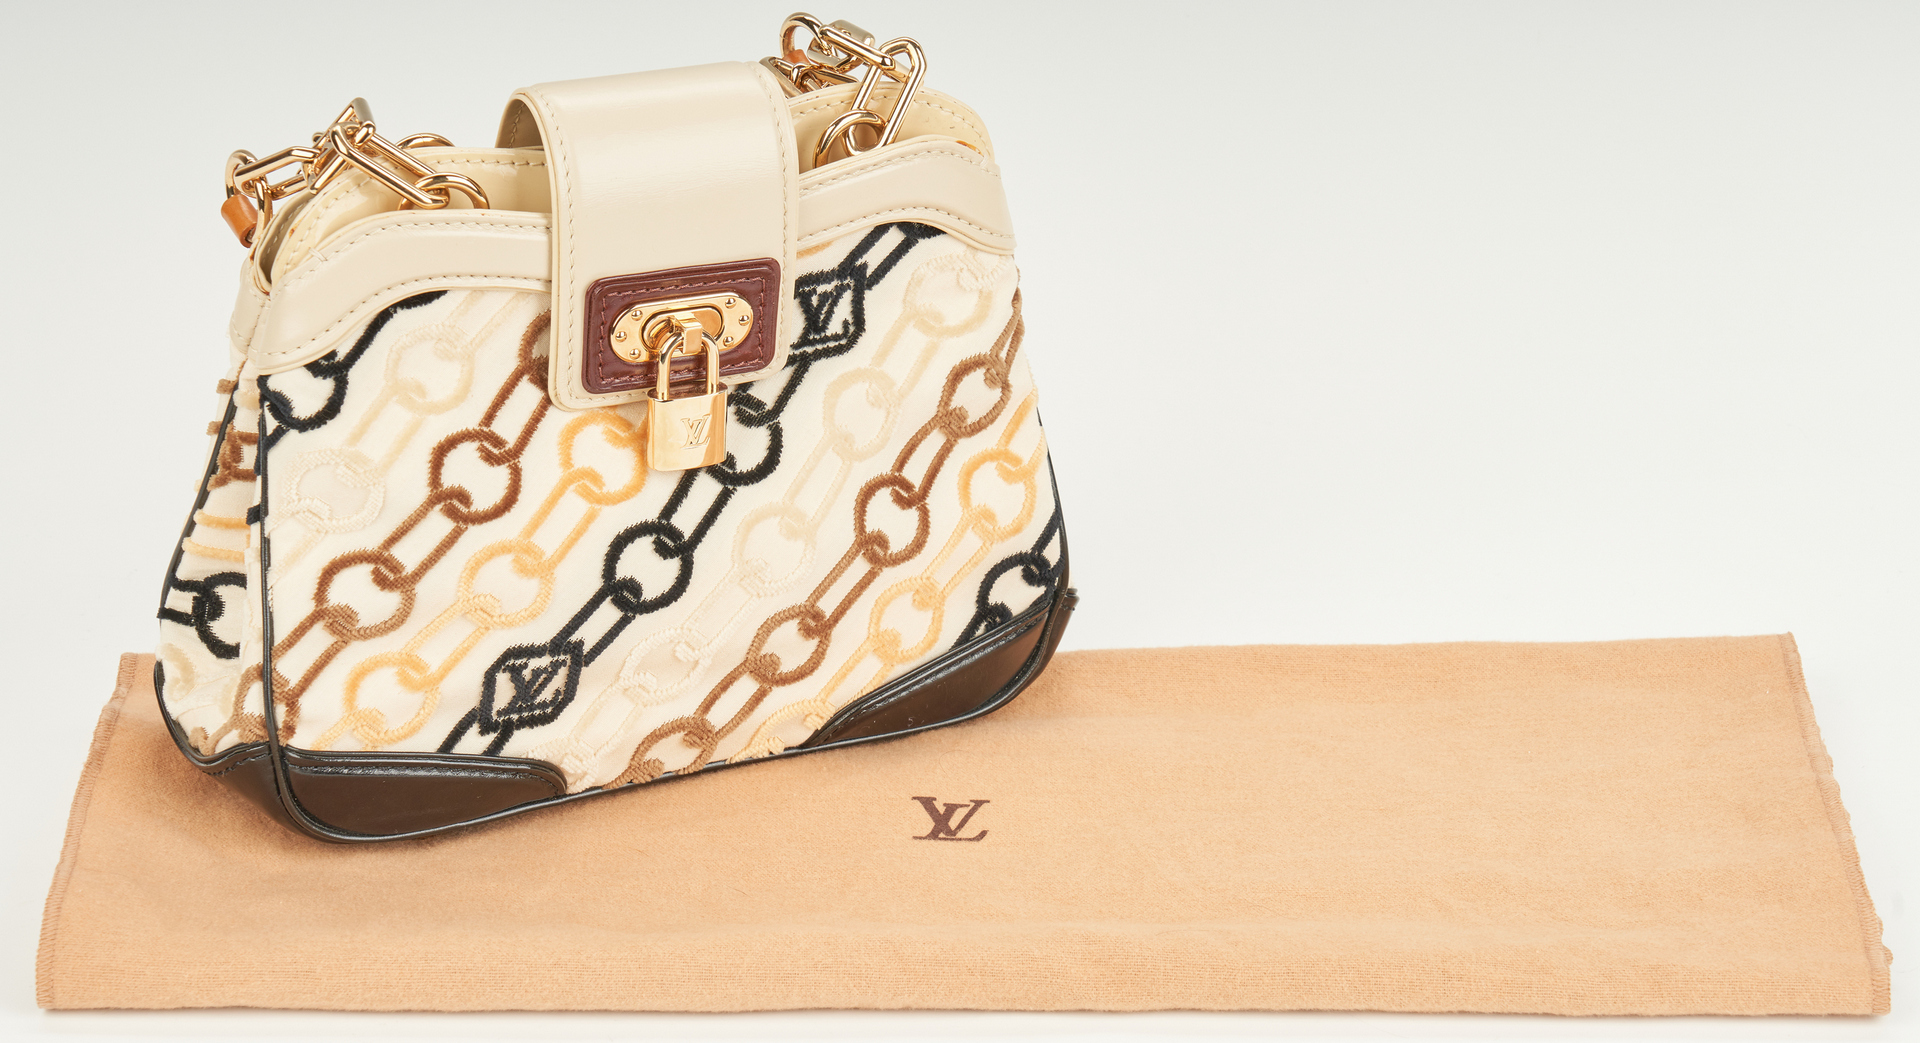 Lot 702: Louis Vuitton "Velvet Chains" Mini Linda Handbag, Marc Jacobs